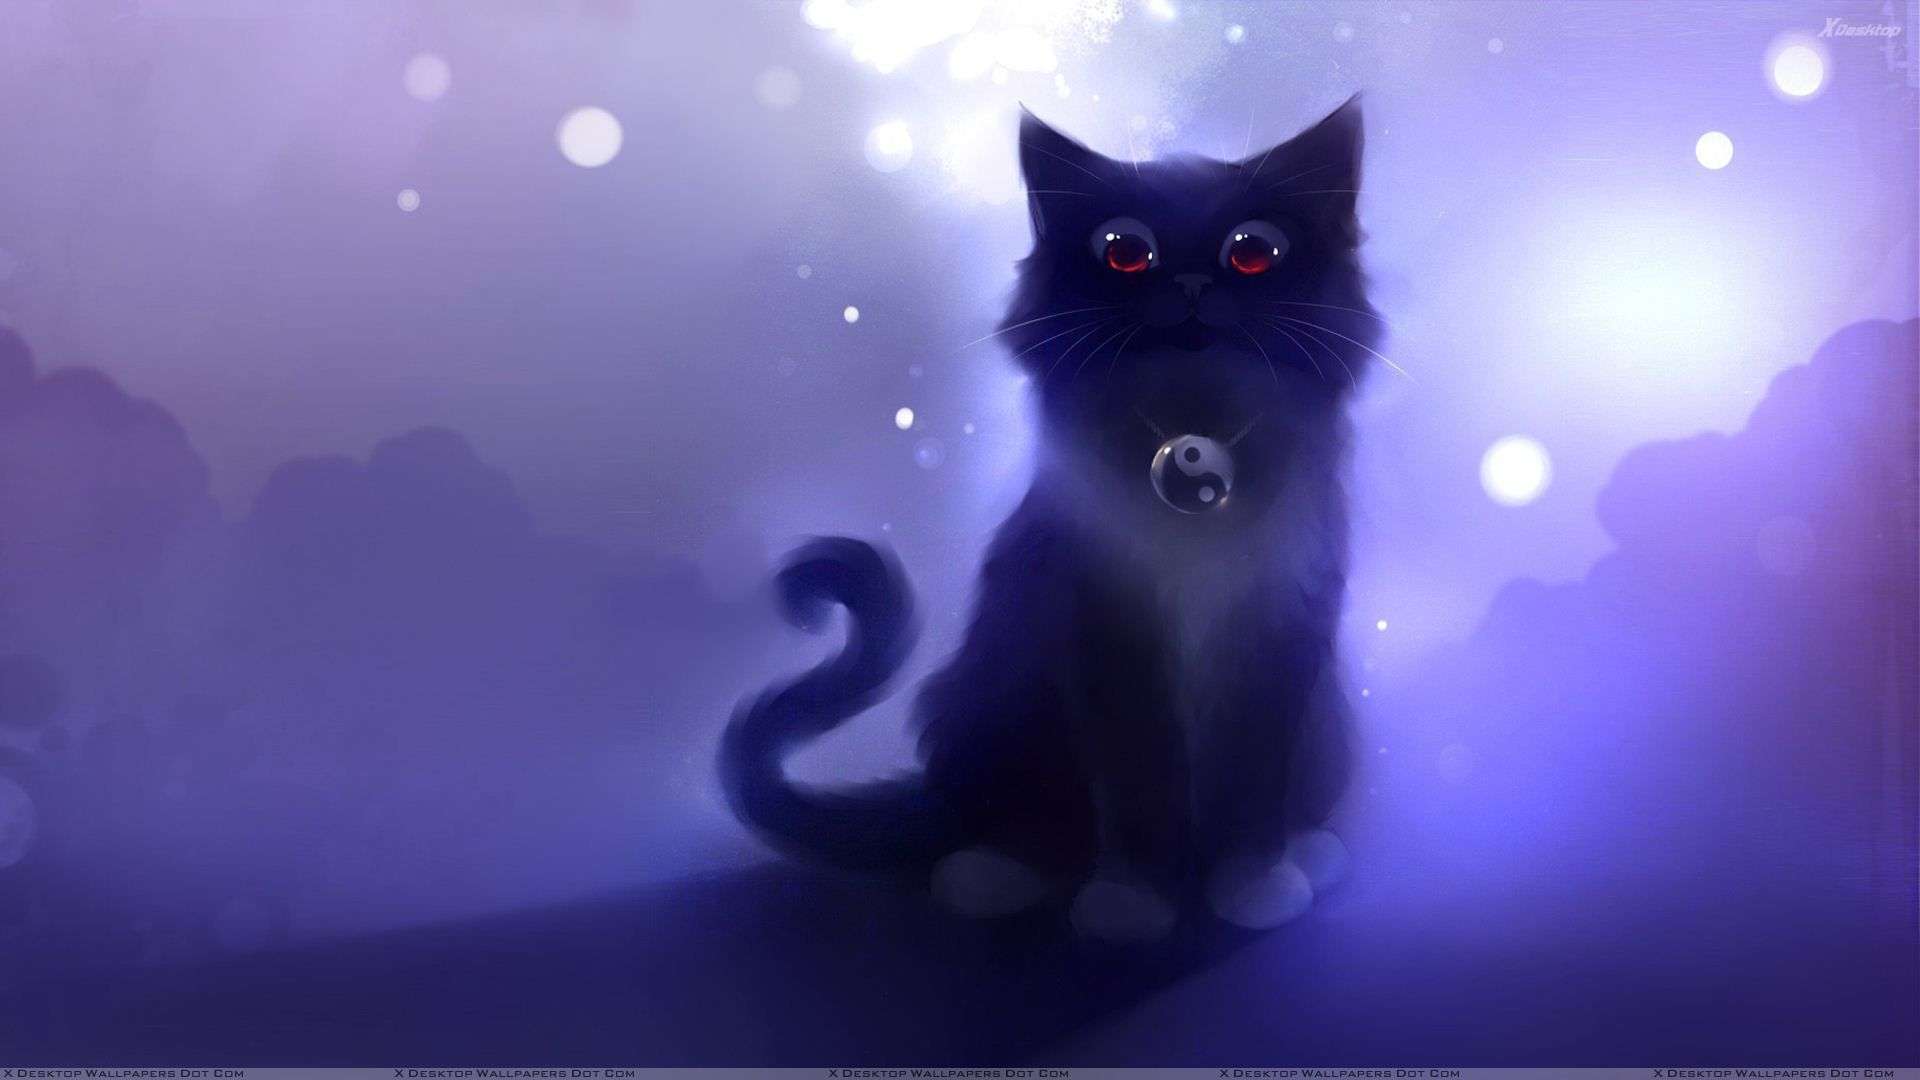 Download Black Aesthetic Cute Cat PFP Wallpaper